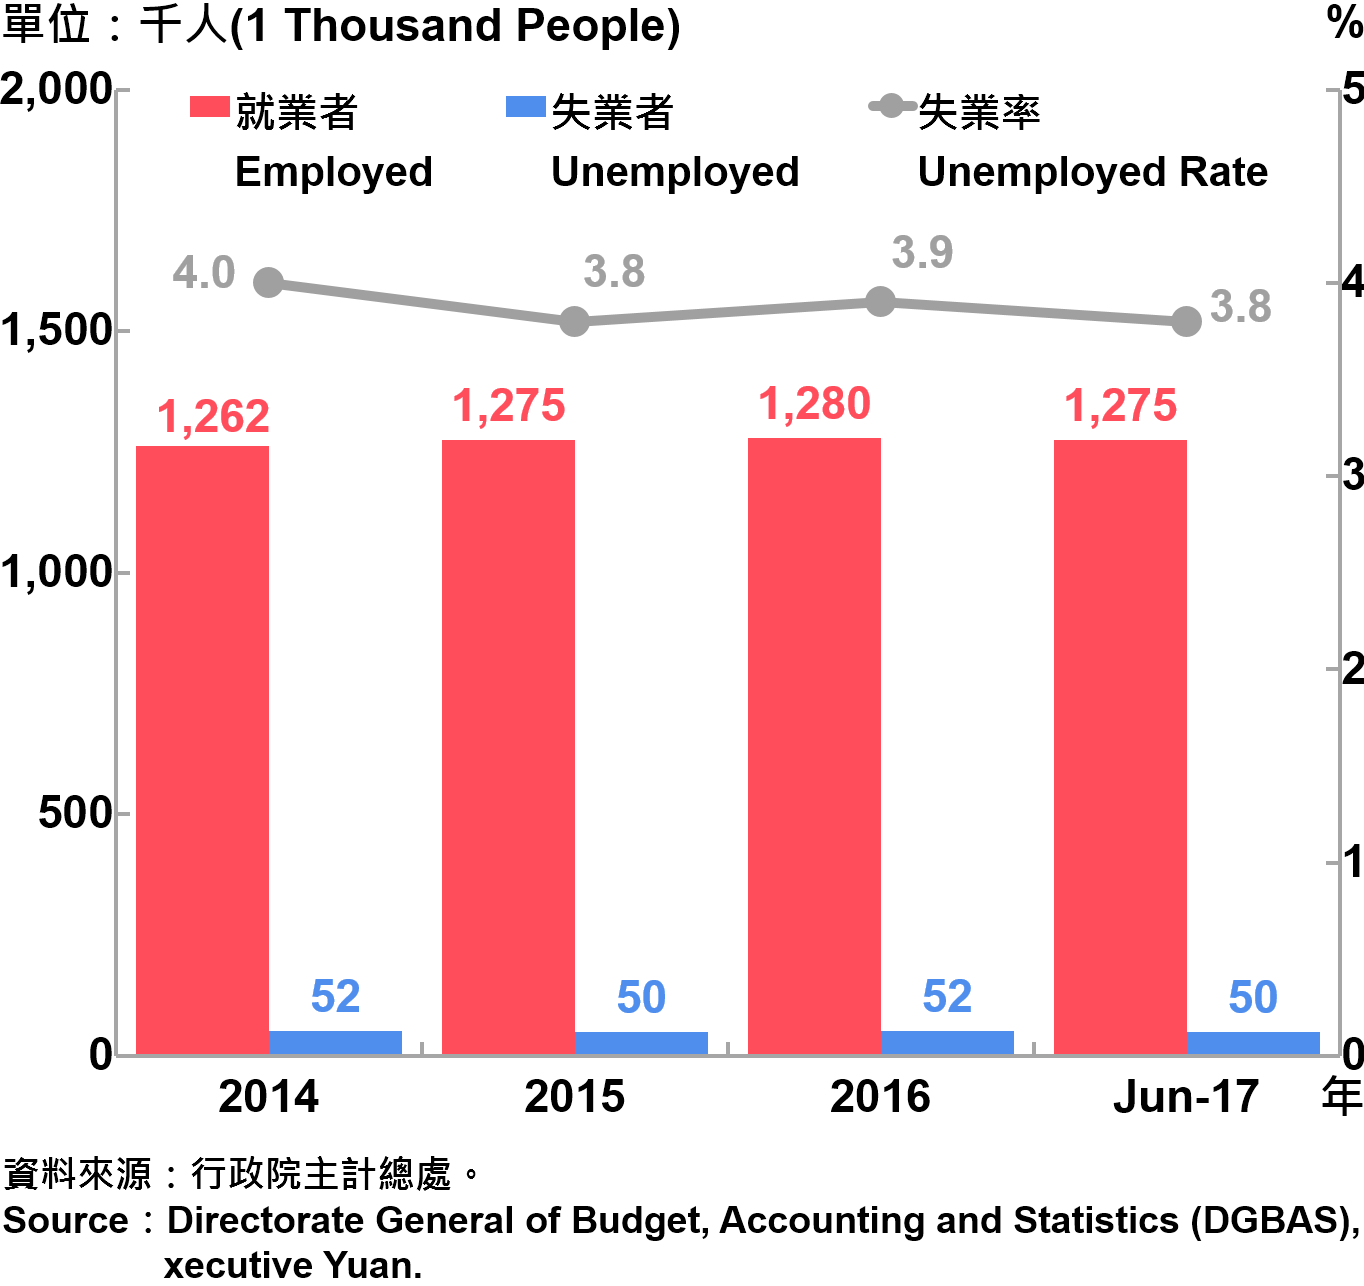 圖4、臺北市勞動力人數統計—2017Q2  Labor Force Statistics in Taipei City—2017Q2